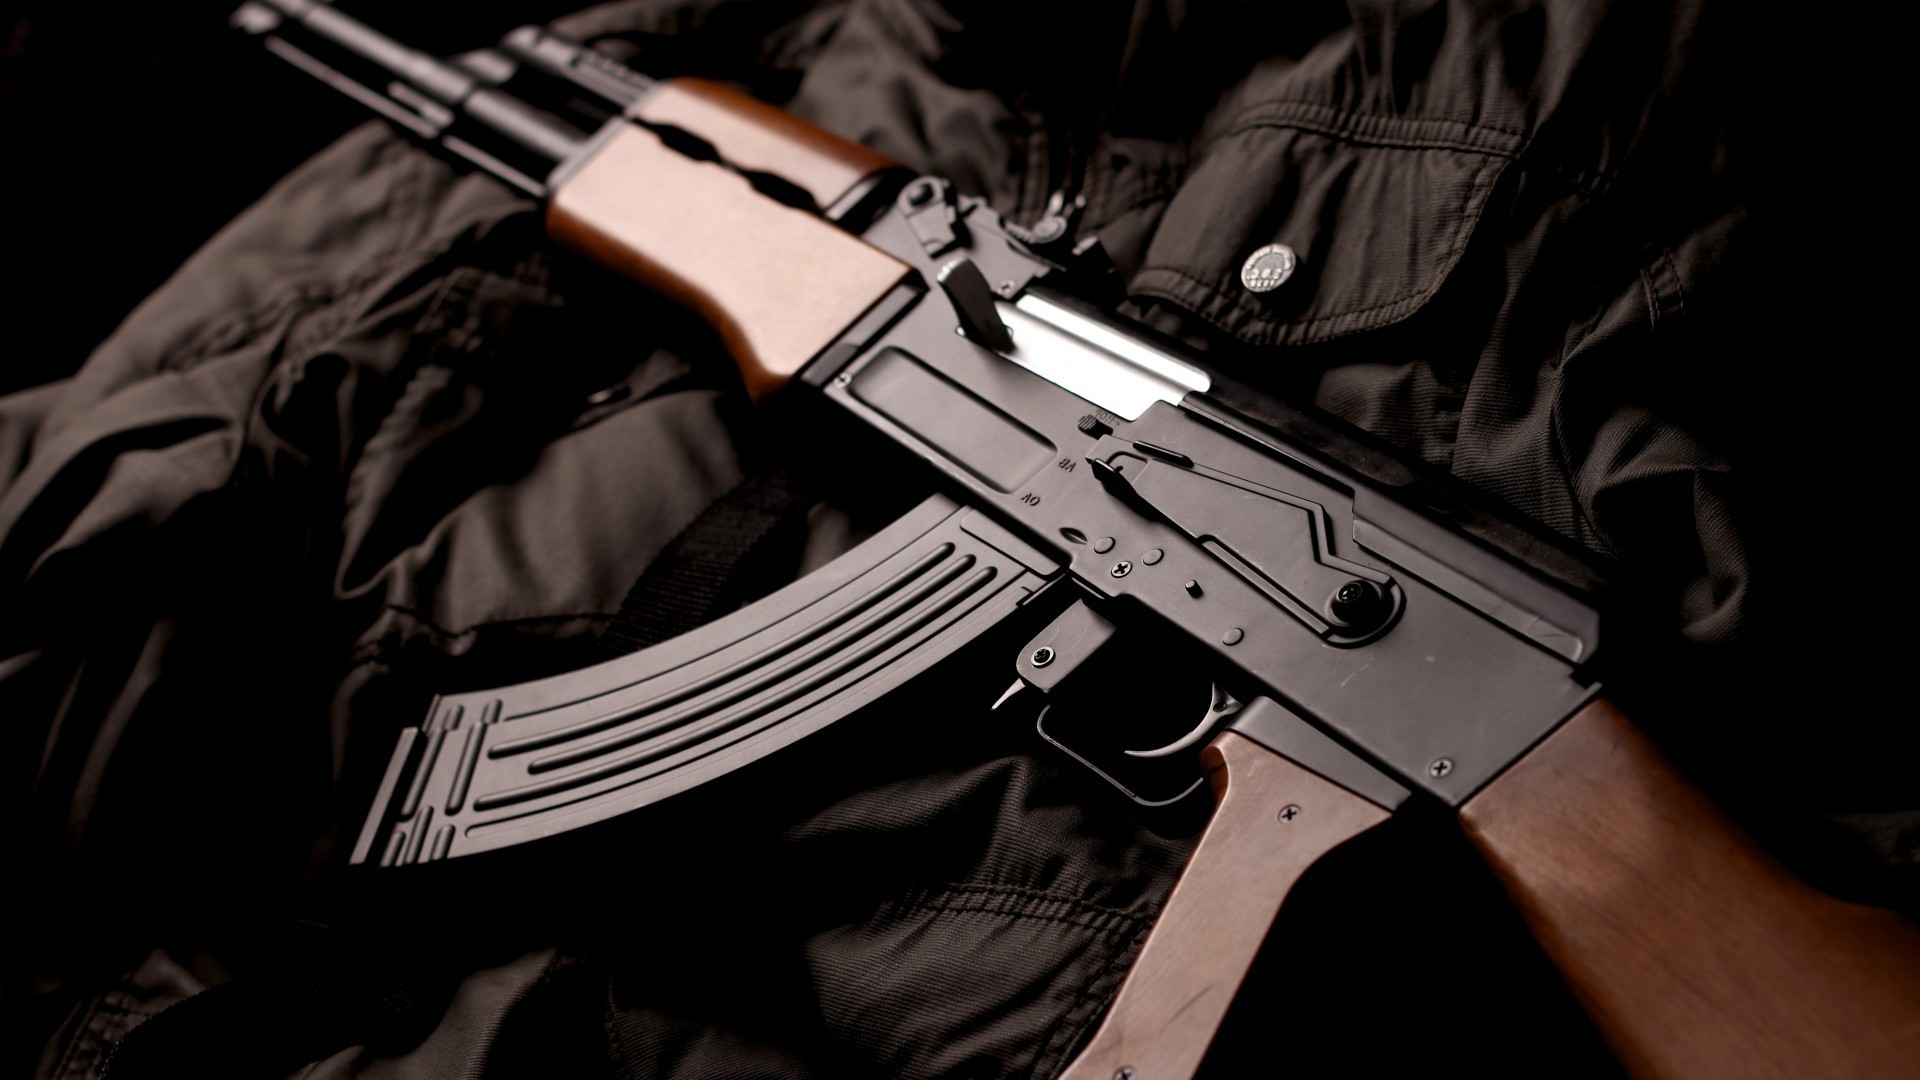 огнестрельное оружие оружие преступление пистолет силу полиция опасность пистолет войны военные винтовка безопасности боеприпасы битва армия пуля человек